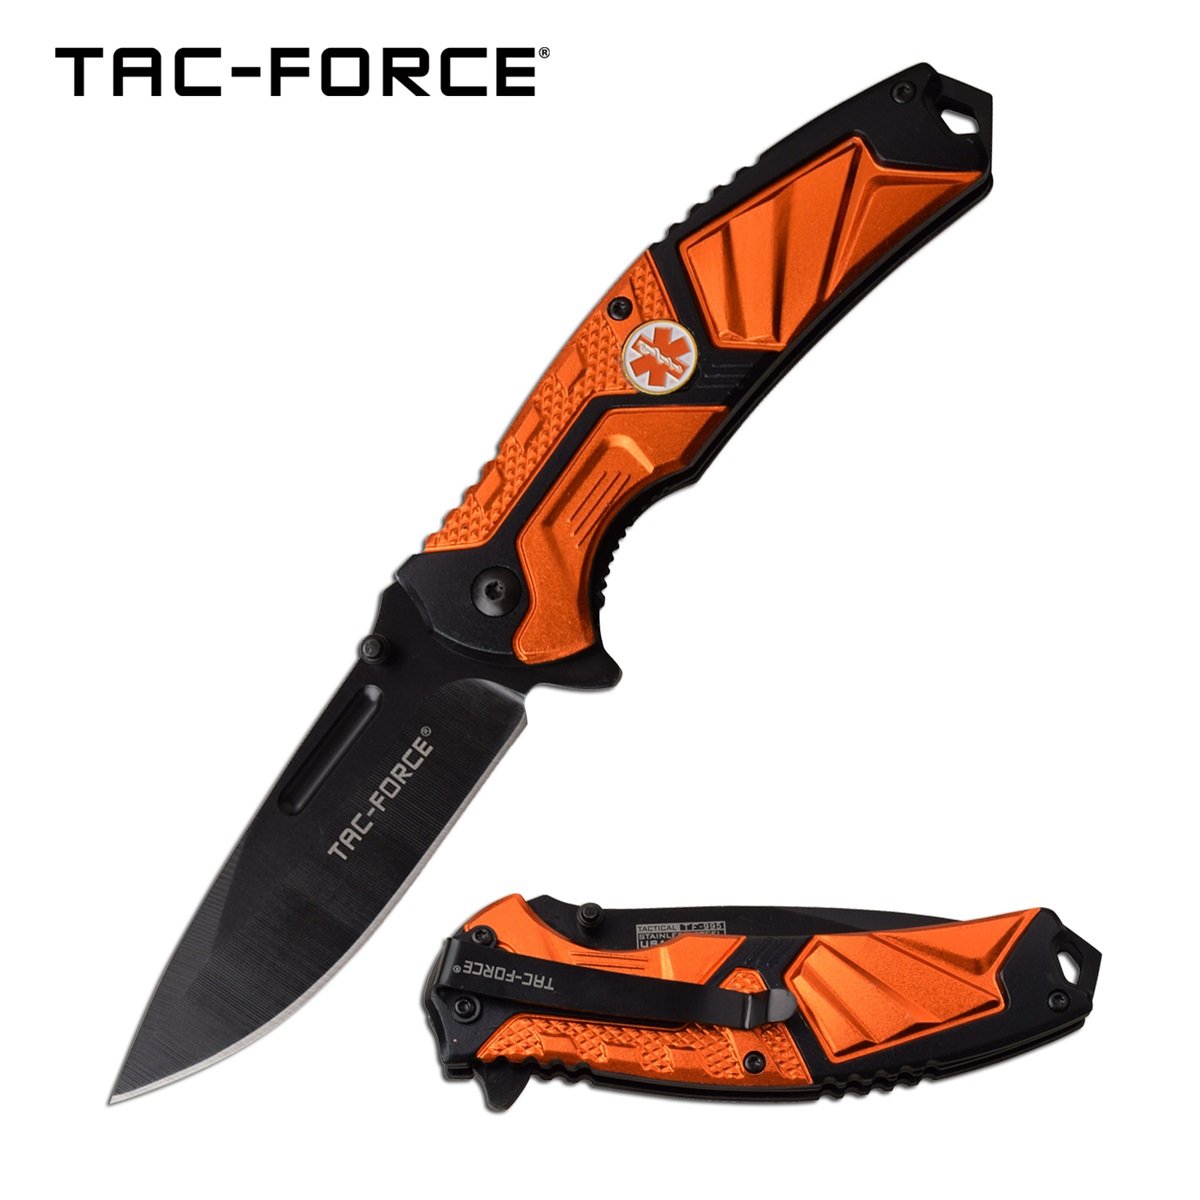 Spring-Assist Folding Knife Tac-Force 3.5in. Black Blade EMT Paramedic Orange